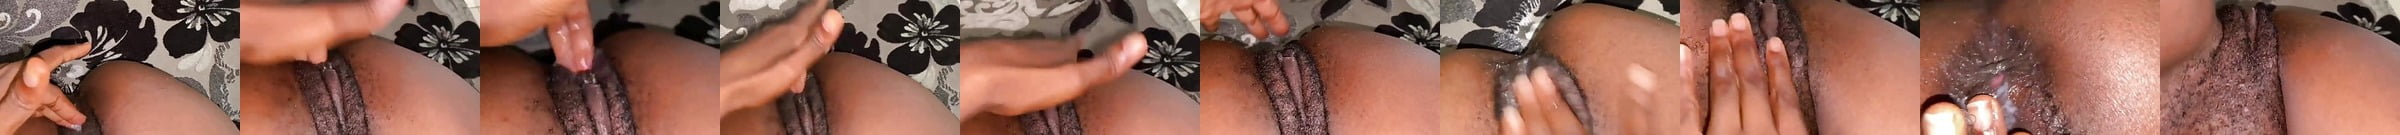 Ebony Tease Porn Videos Xhamster